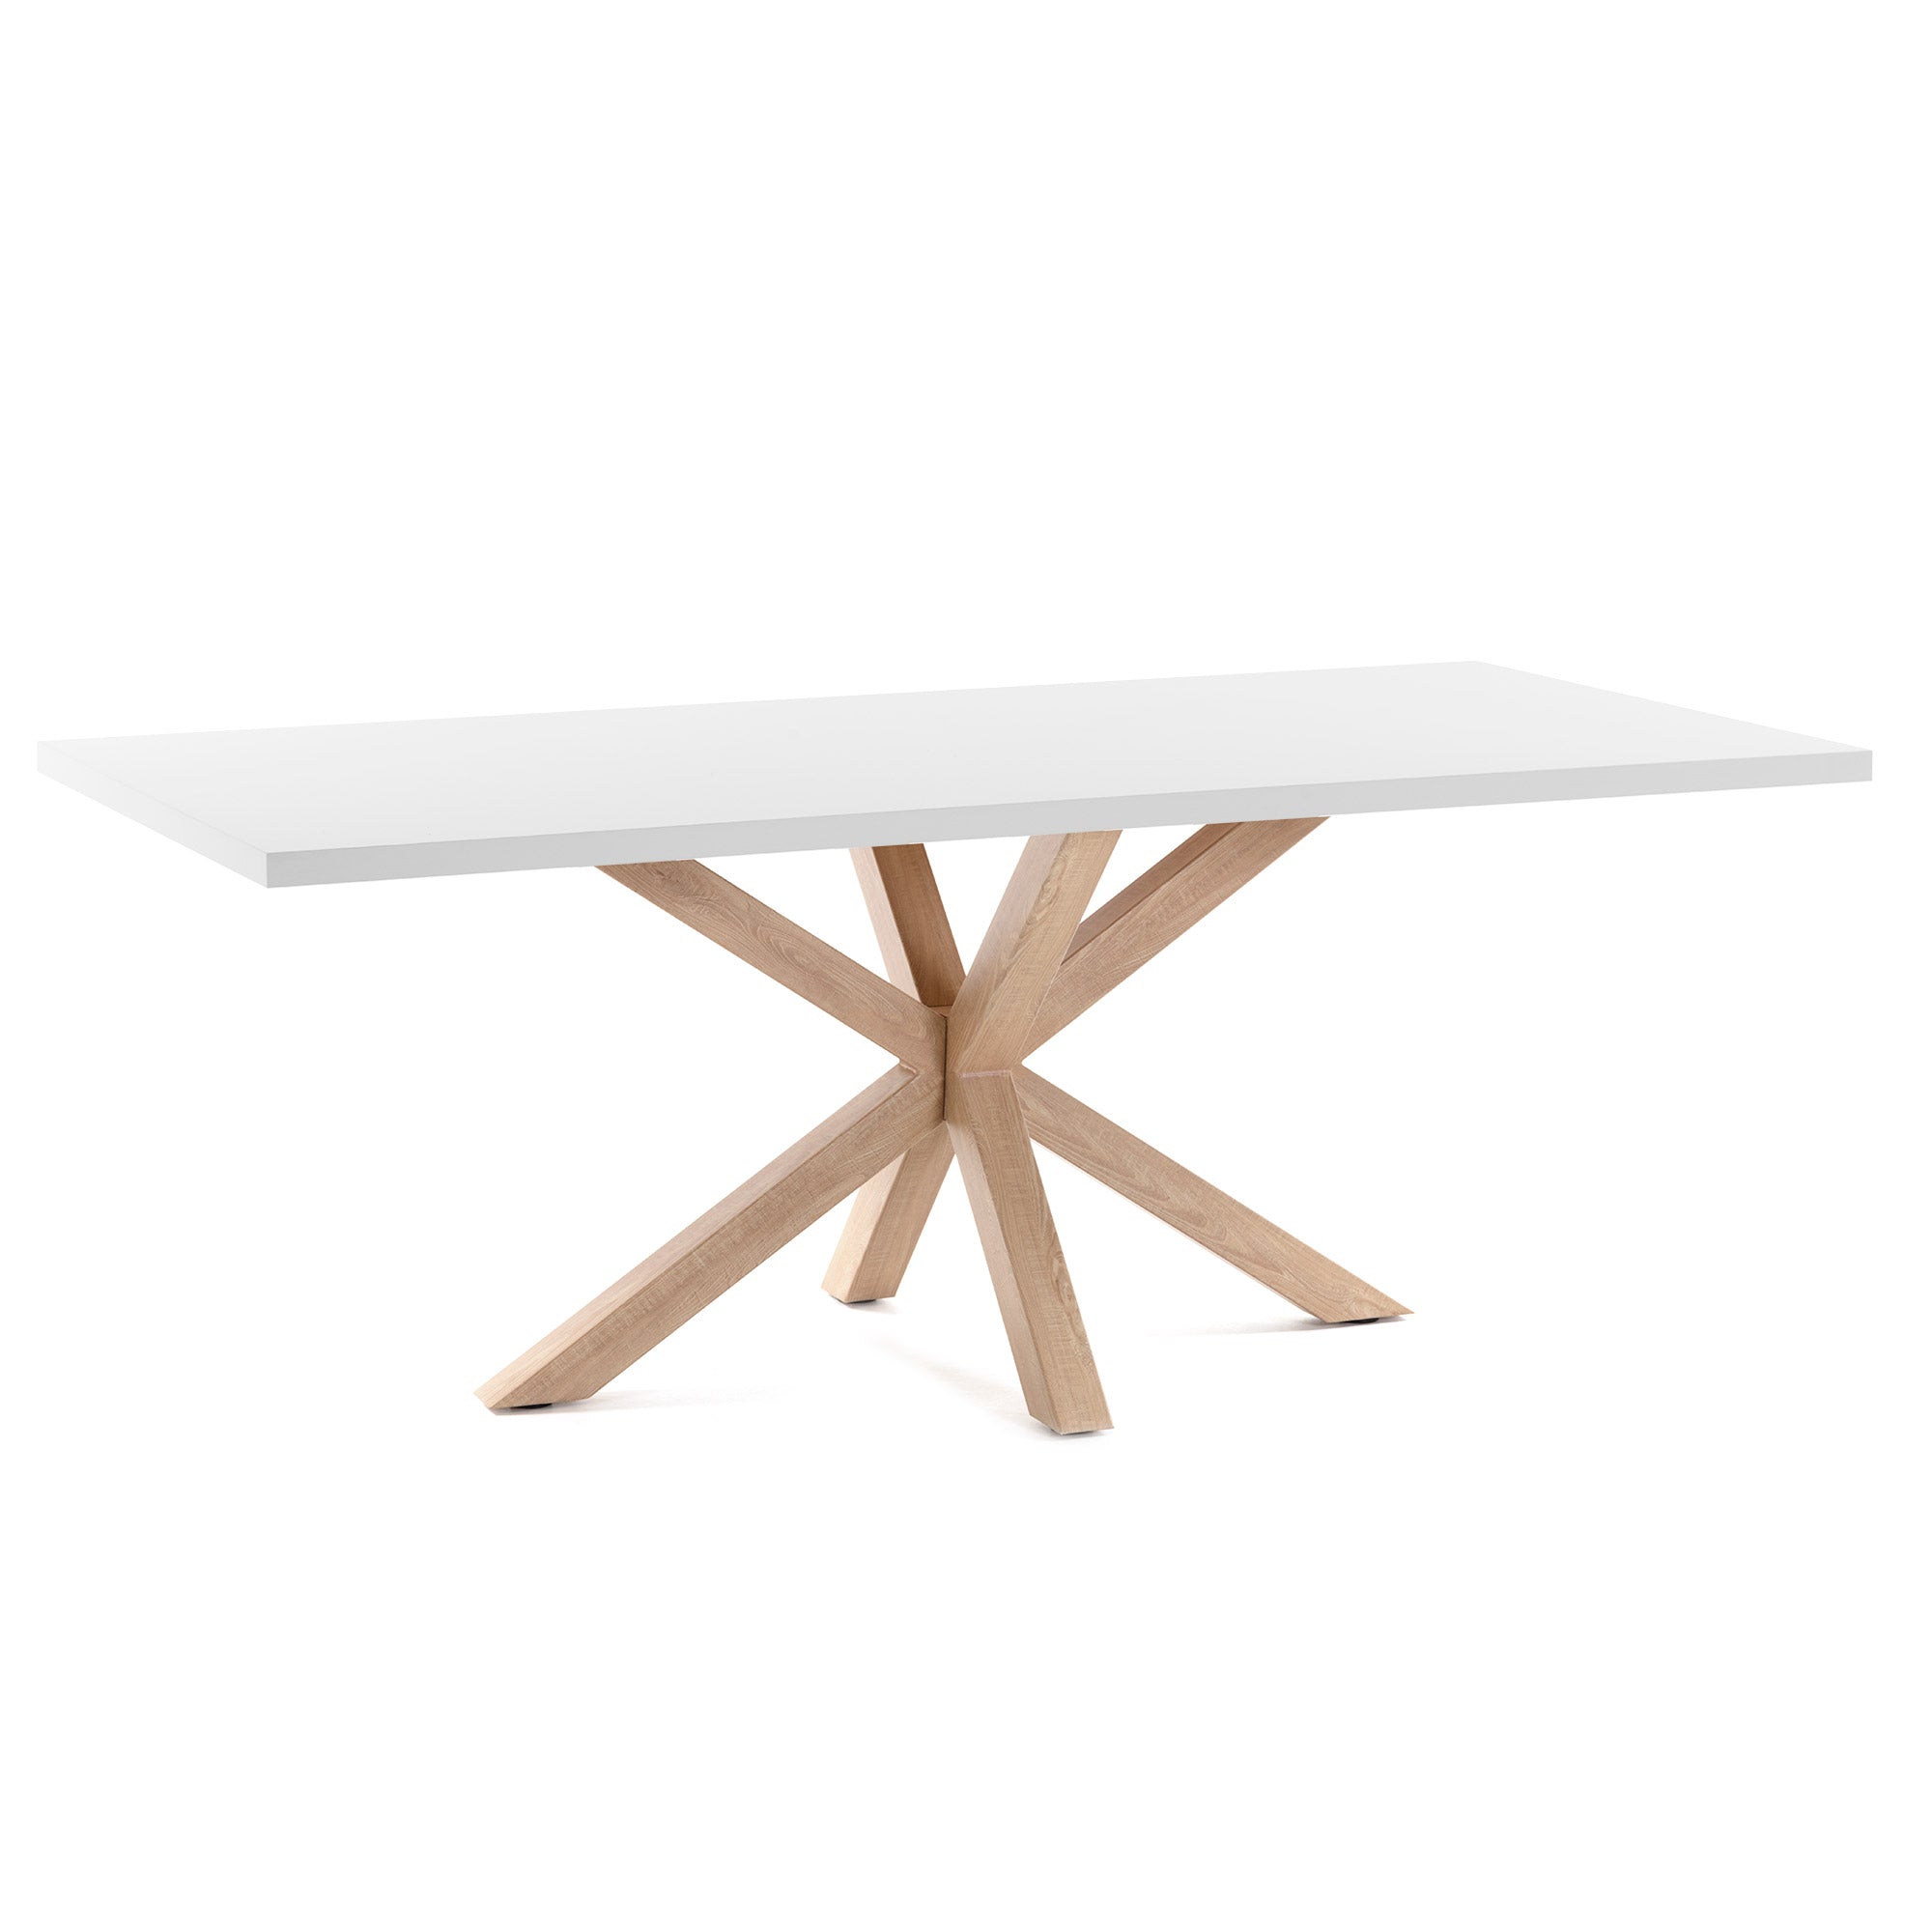 Argo table 200 x 100 cm white melamine wood effect legs